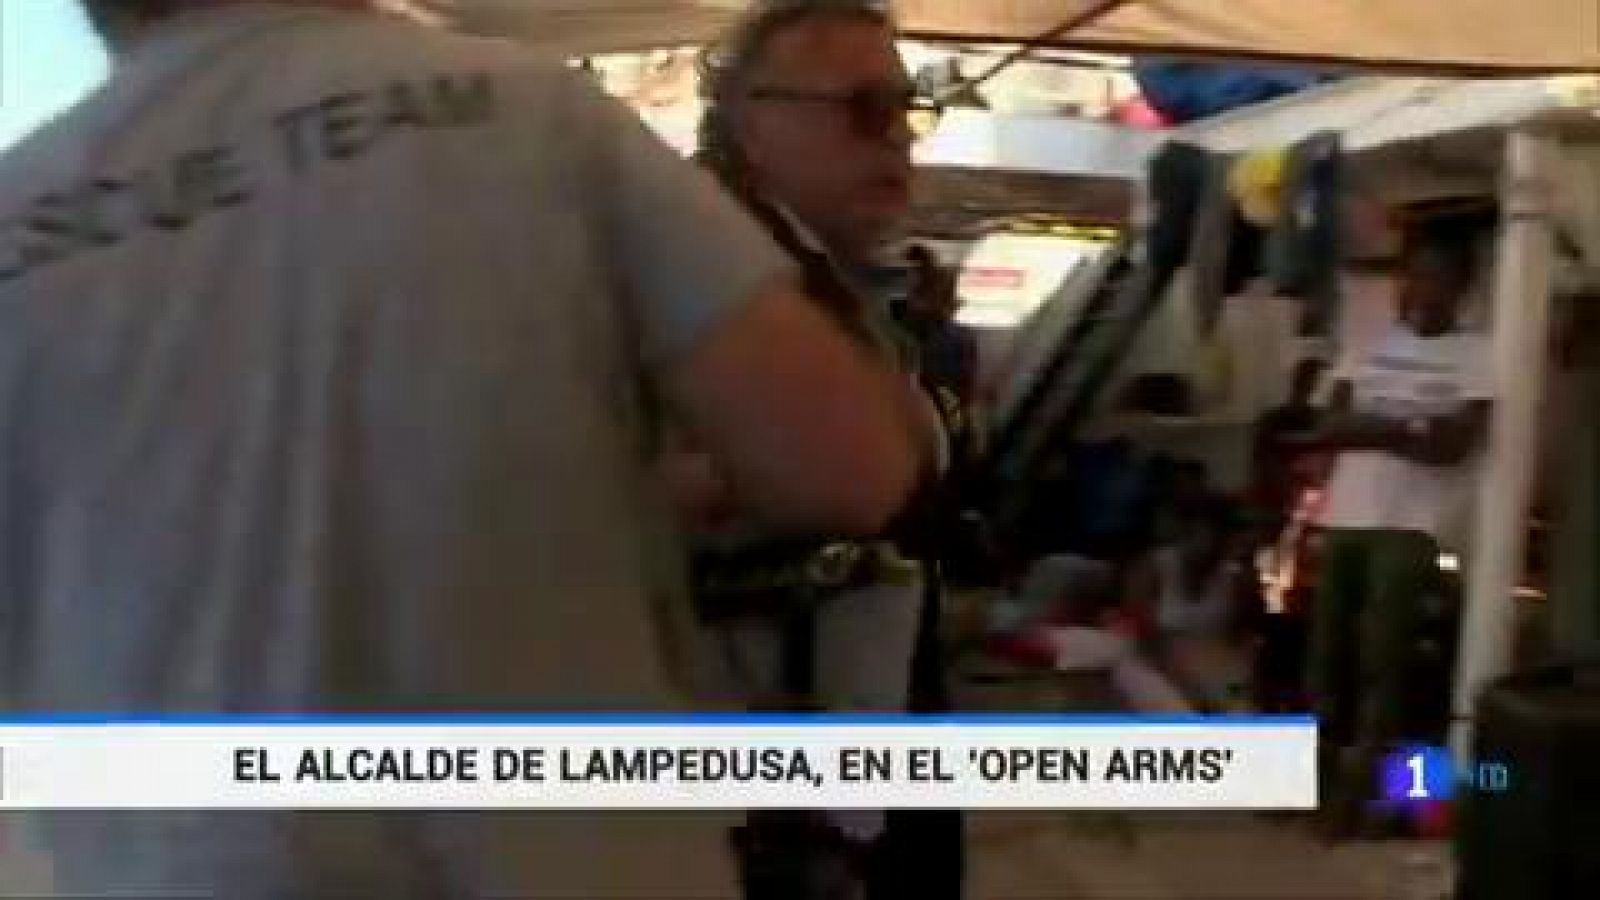 El alcalde de Lampedusa: "No tenemos miedo al desembarco del Open Arms, es un problema político"